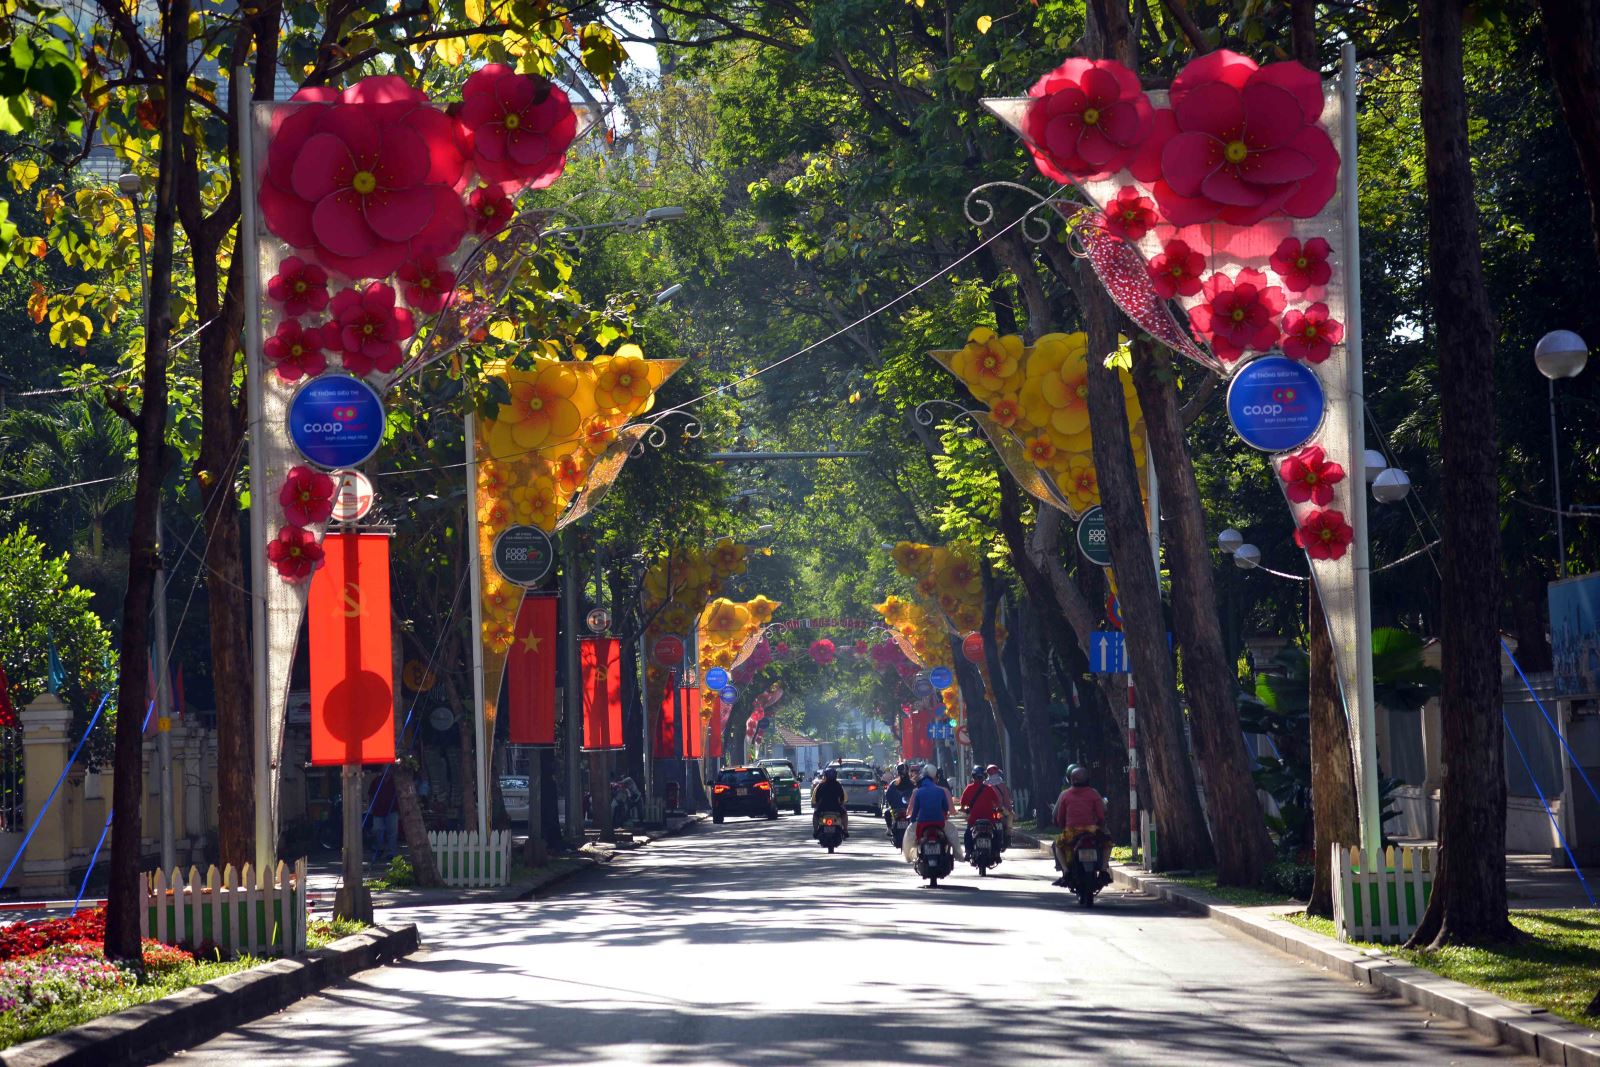 TP Hồ Chí Minh - với nhịp sống nhanh, tràn đầy sức sống và màu sắc tươi trẻ, chắc chắn sẽ không khiến bạn thất vọng. Hãy xem hình ảnh để có được một cái nhìn tổng thể về thành phố hiện đại, đầy năng động và phát triển này.